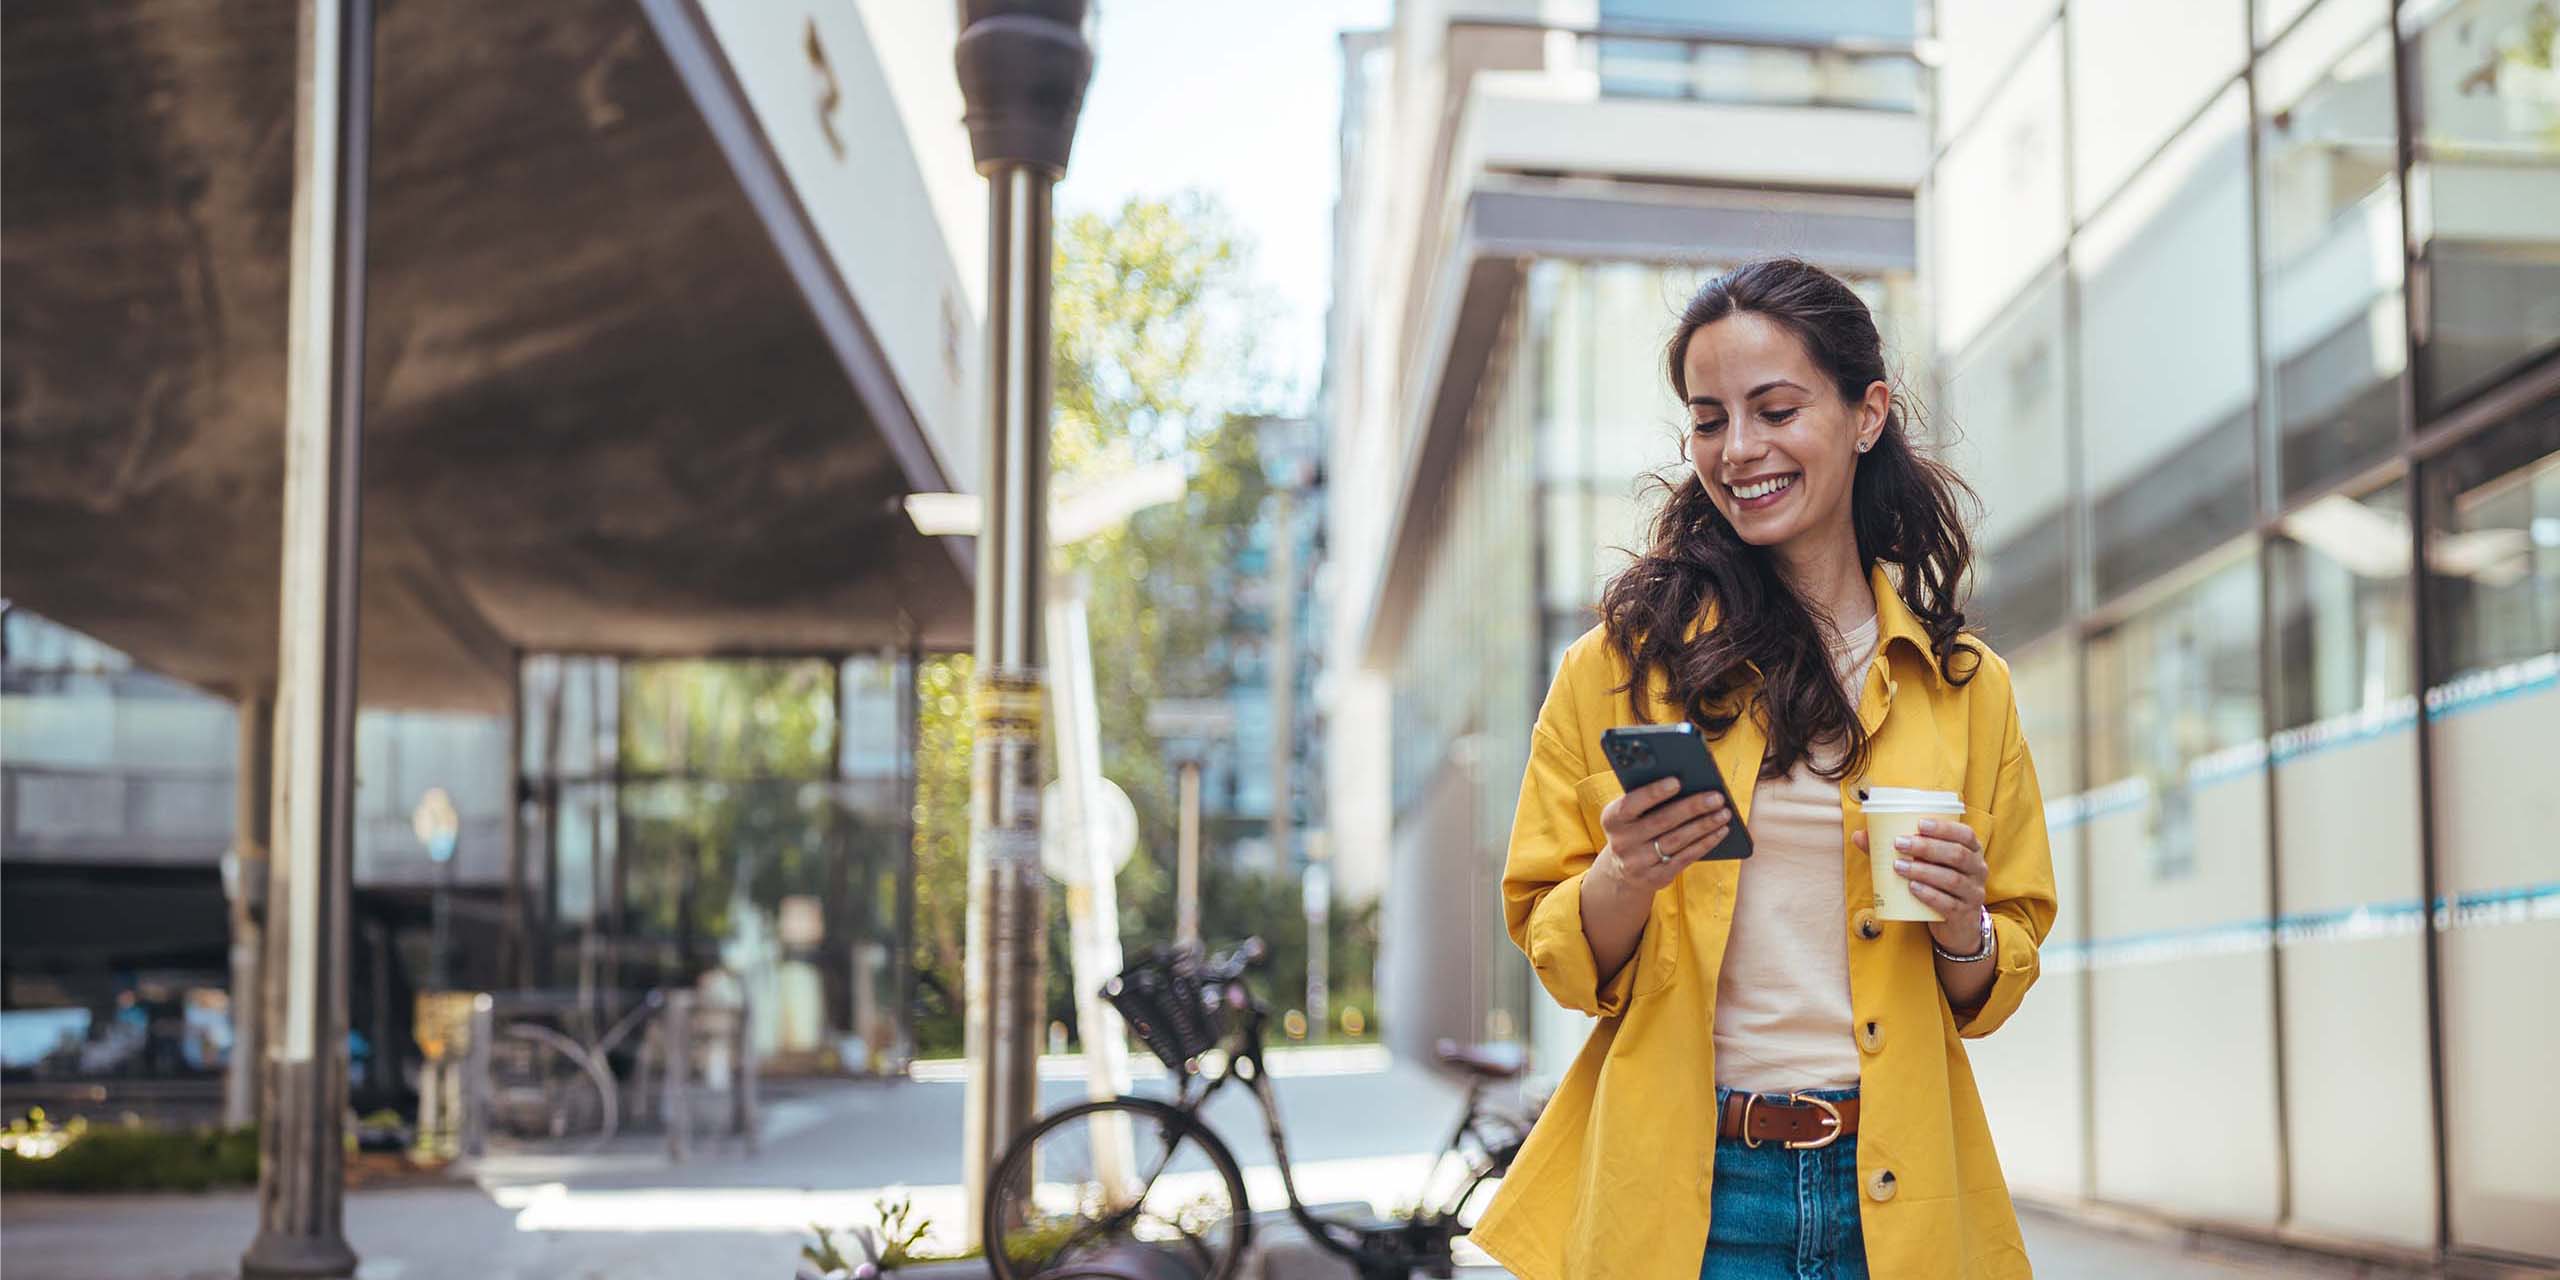 Eine lächelnde Frau in einem gelben Mantel und Jeans geht eine Stadtstraße entlang und hält ein Smartphone und eine Kaffeetasse in der Hand. Im Hintergrund sind moderne Gebäude und ein Fahrradständer mit einem Fahrrad zu sehen. Sie scheint mit ihrem Telefon beschäftigt zu sein.